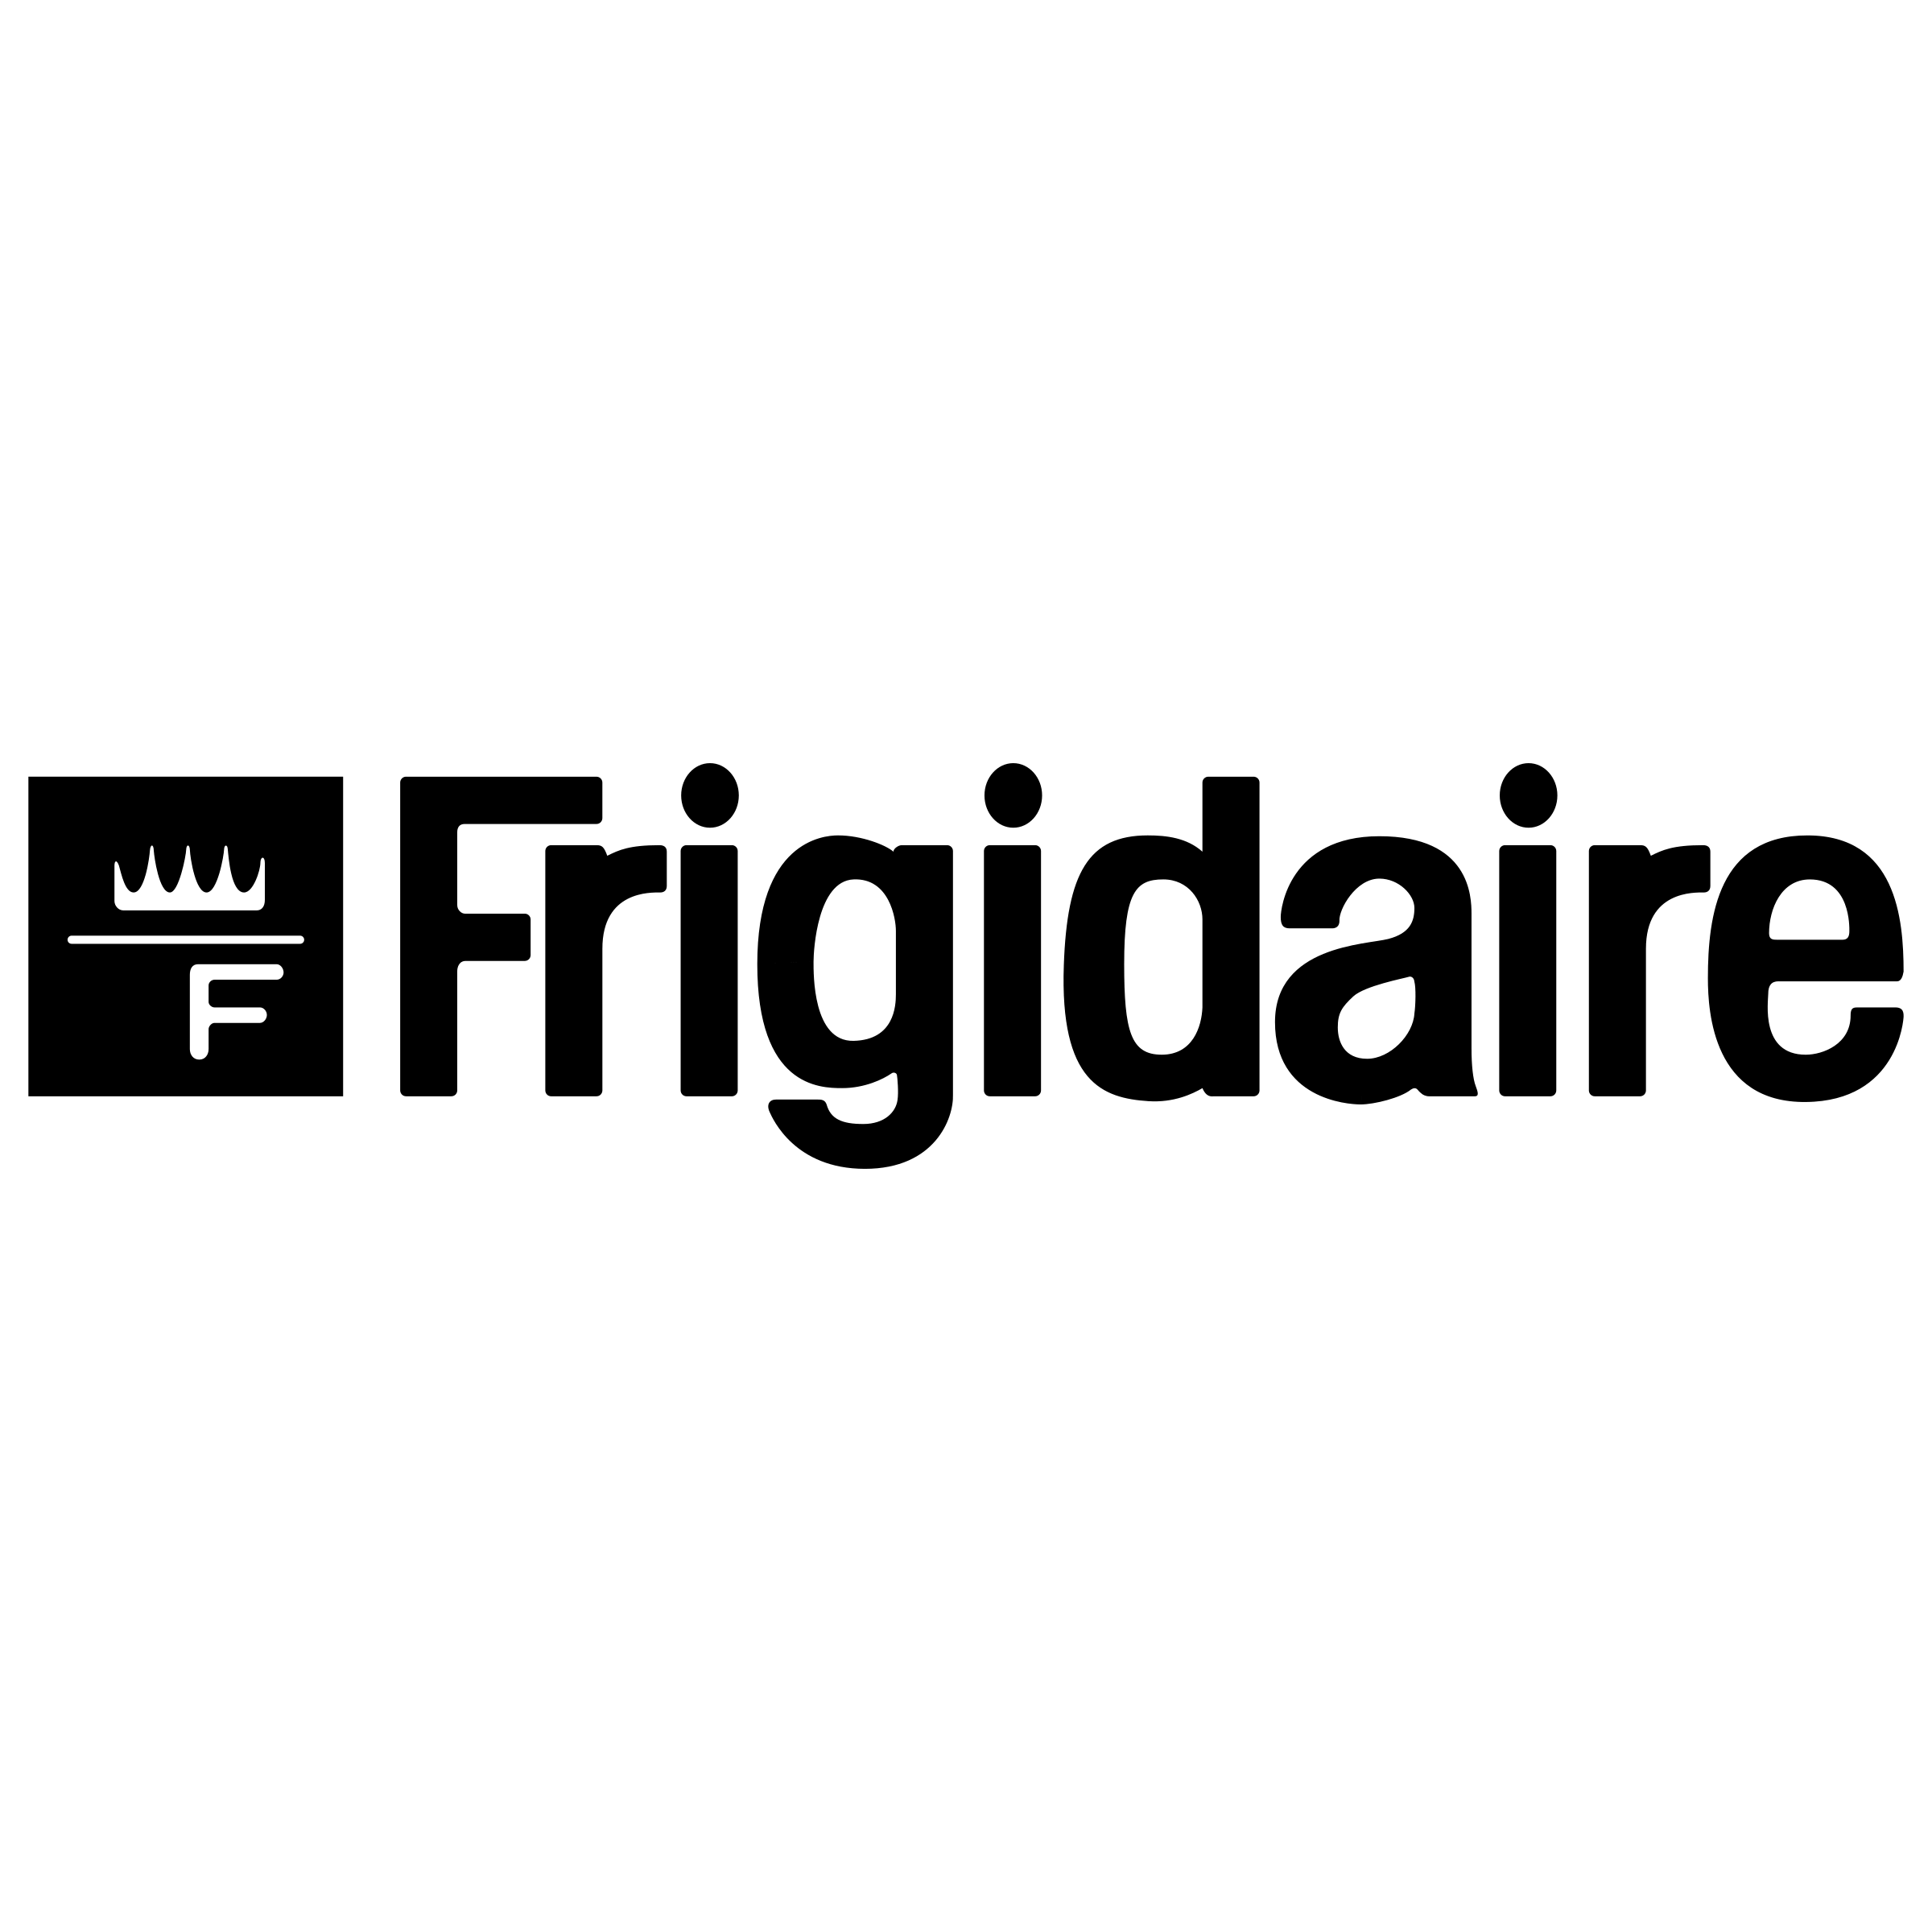 Fridgidaire Logo - Frigidaire Logo PNG Transparent & SVG Vector - Freebie Supply